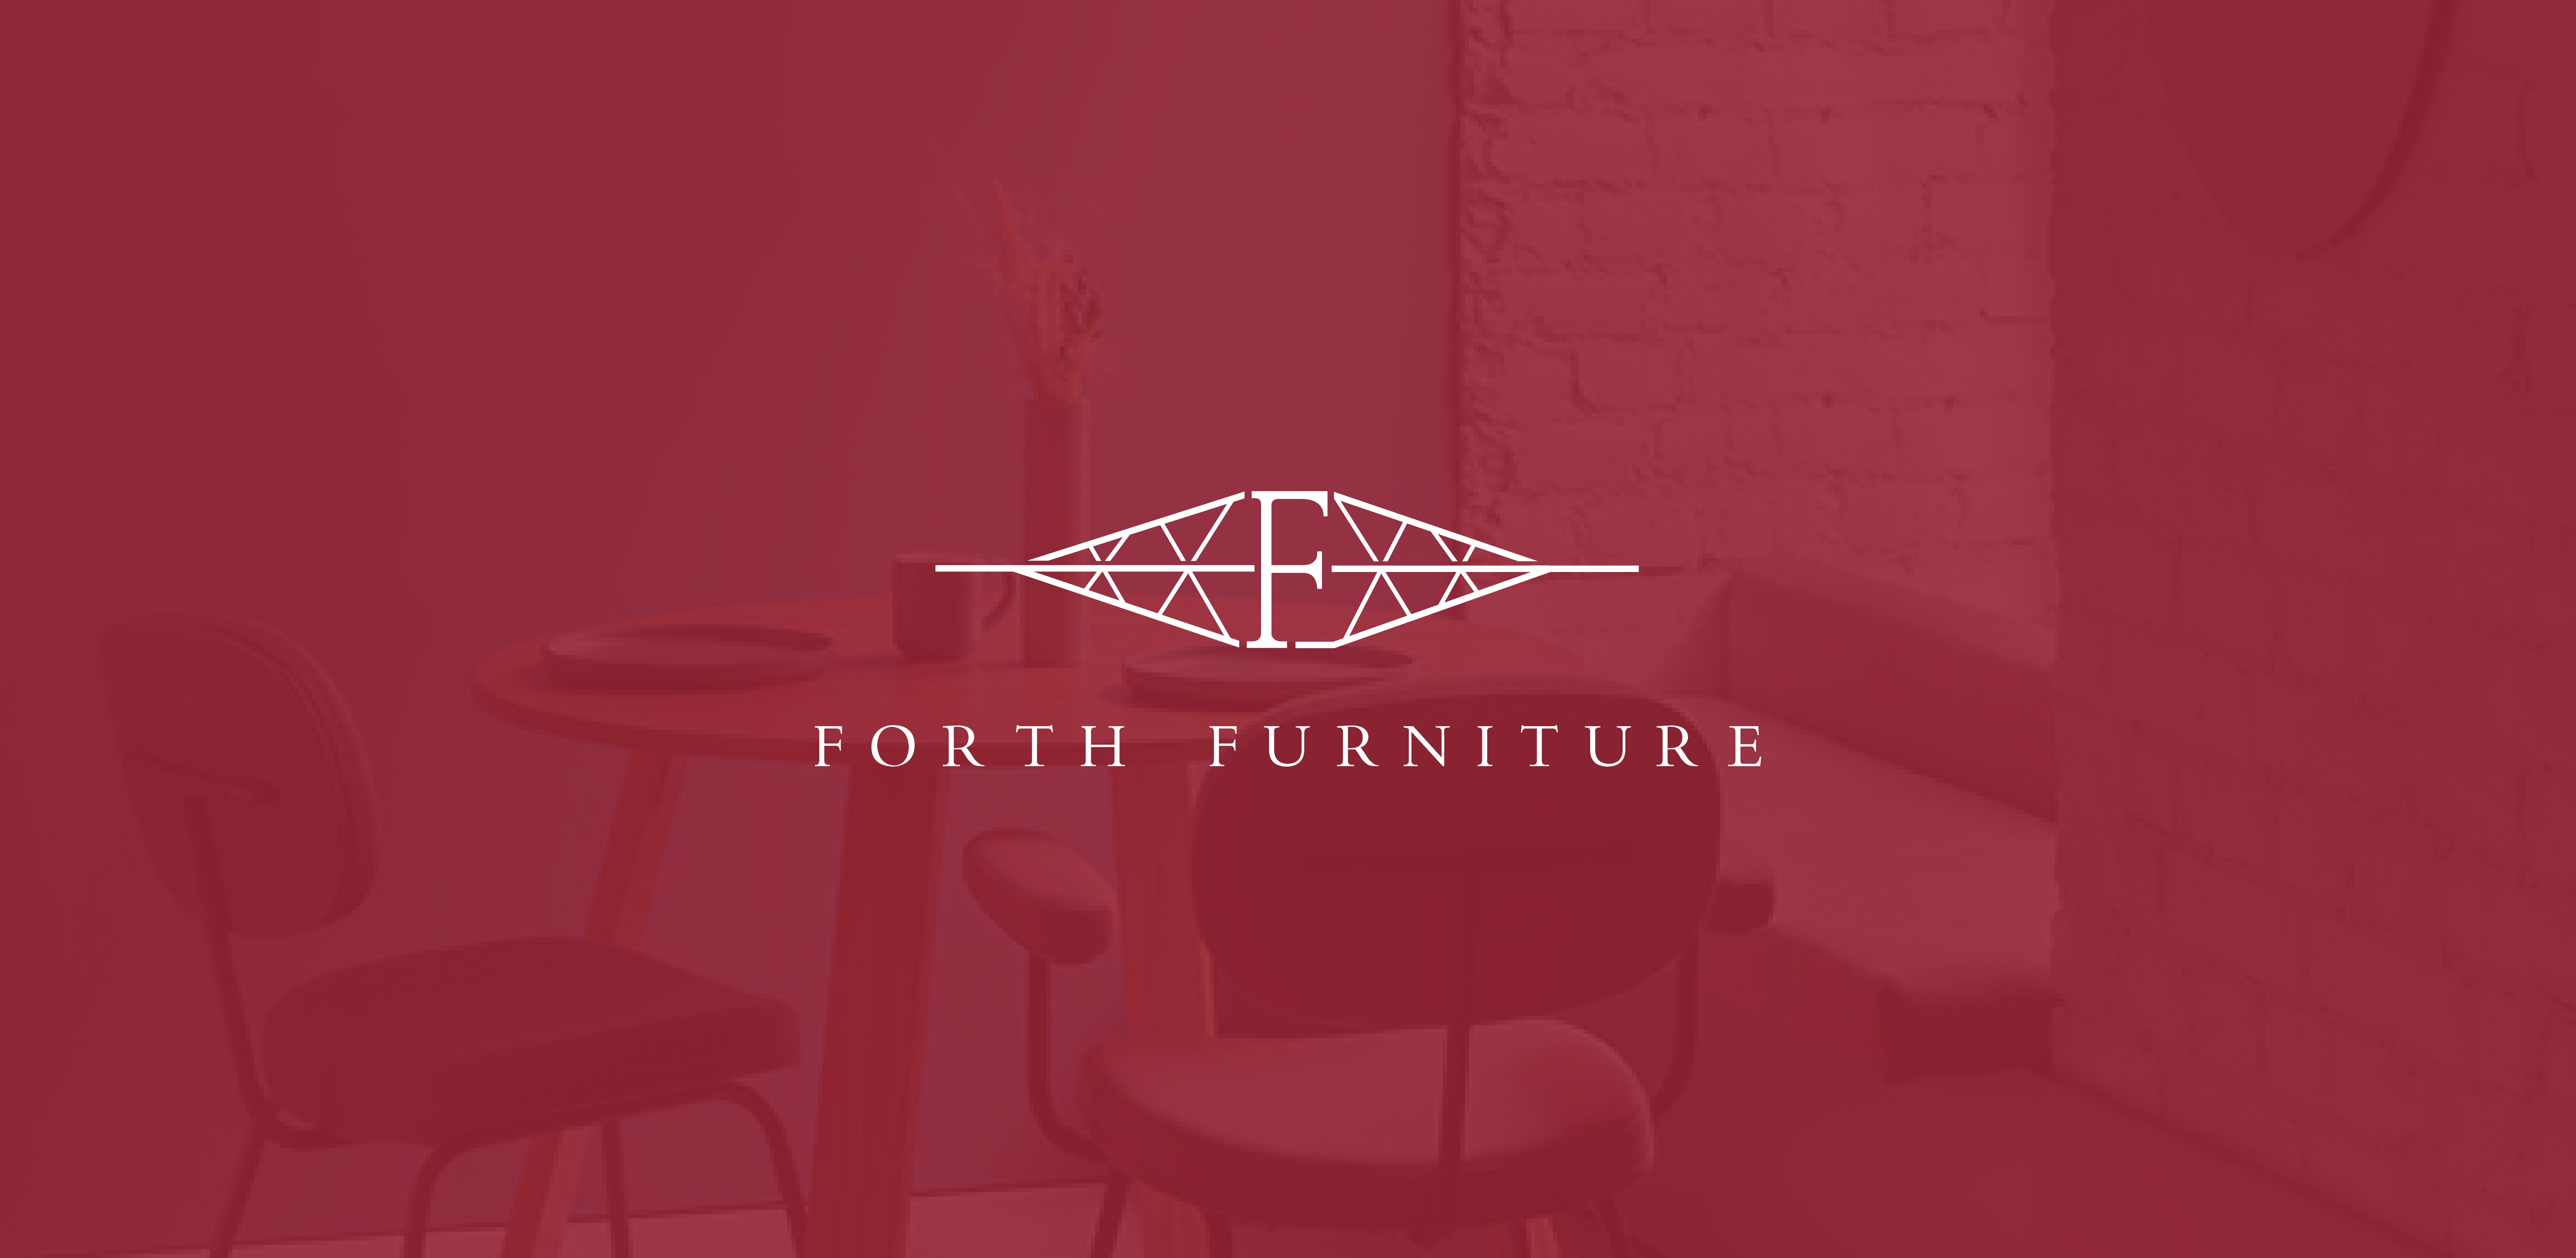 forth furniture logo设计